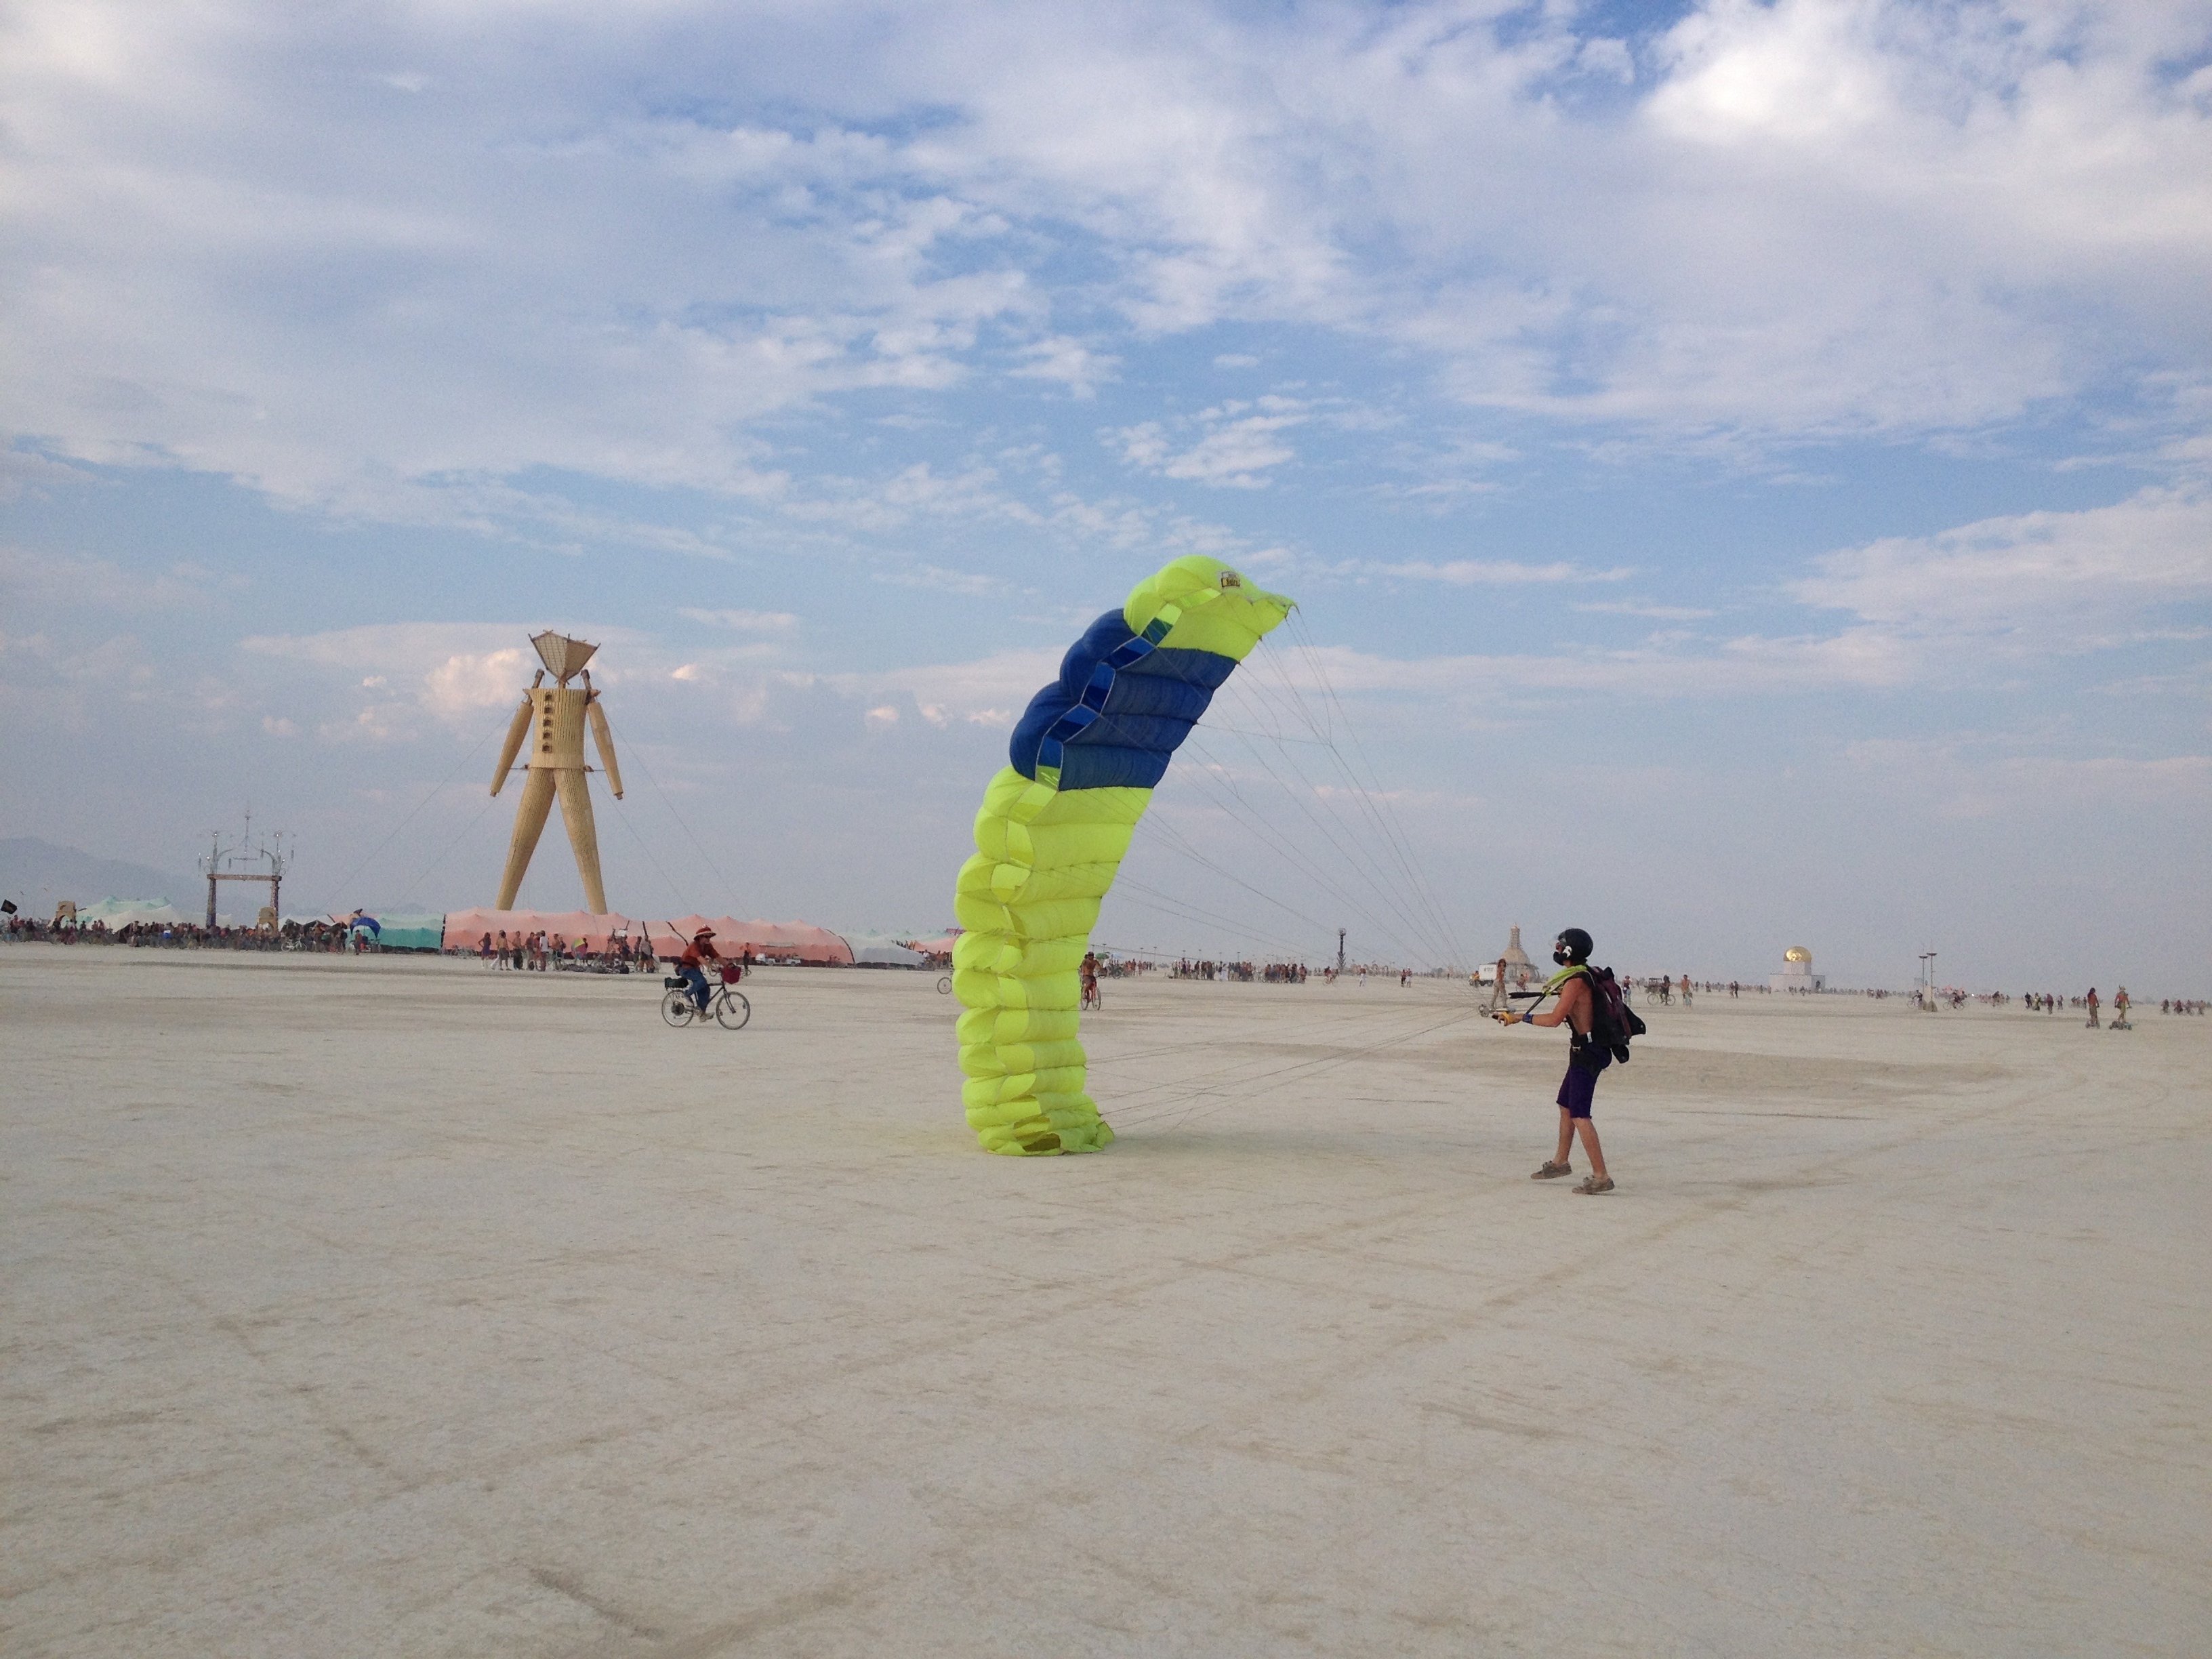 Burning Man festivities